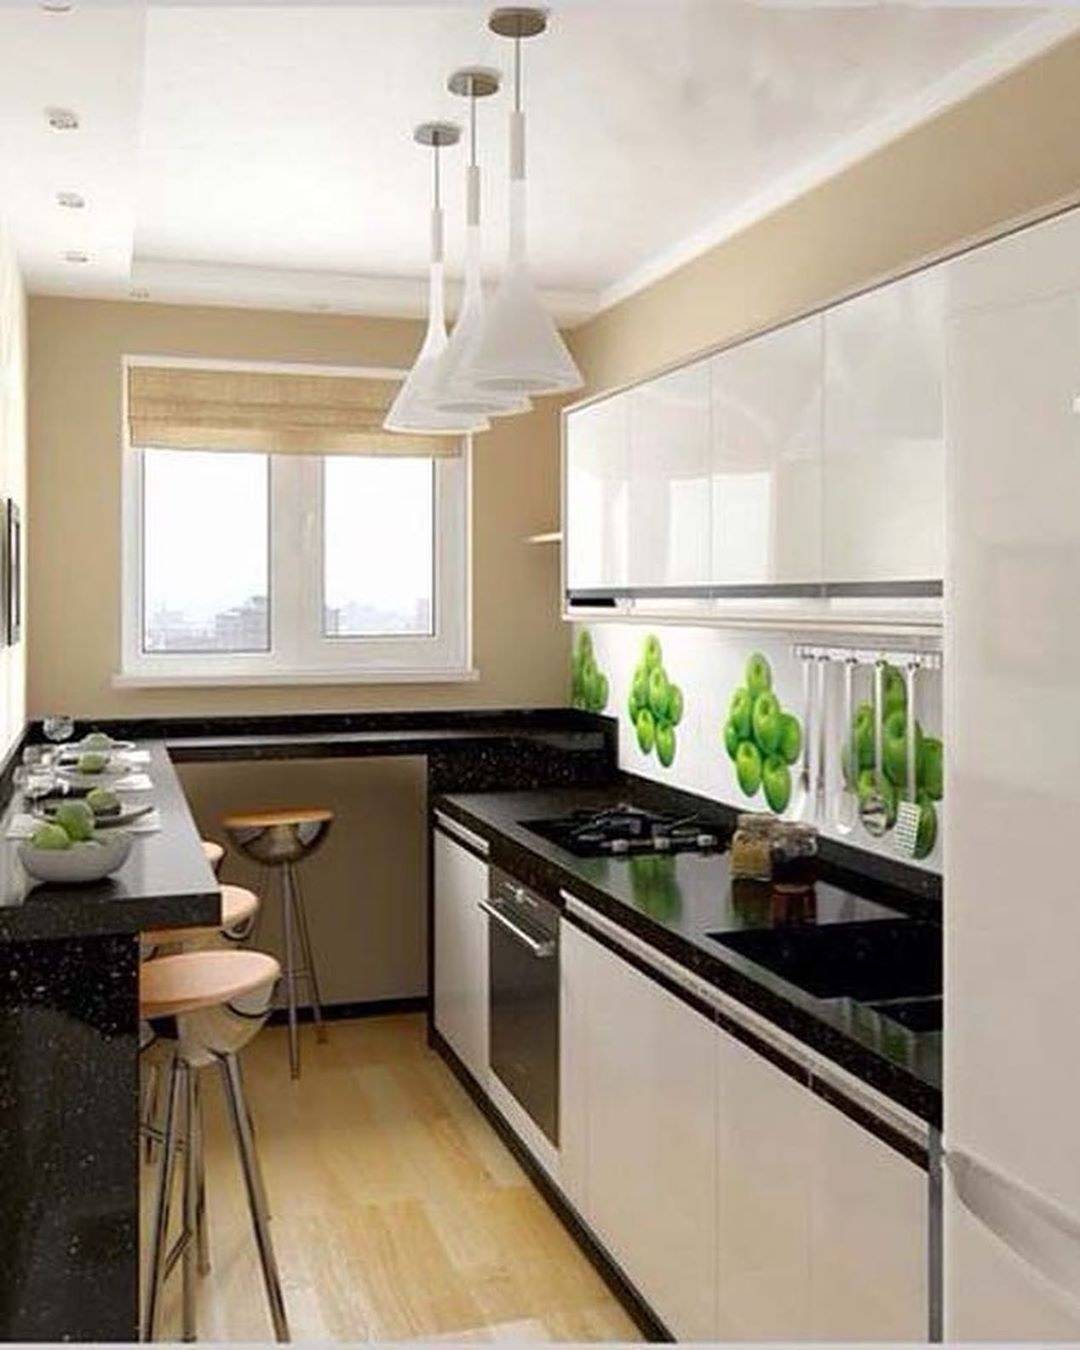 Дизайн узкой кухни: расстановка мебели и техники, цветовое оформление стен и организация освещения комнаты